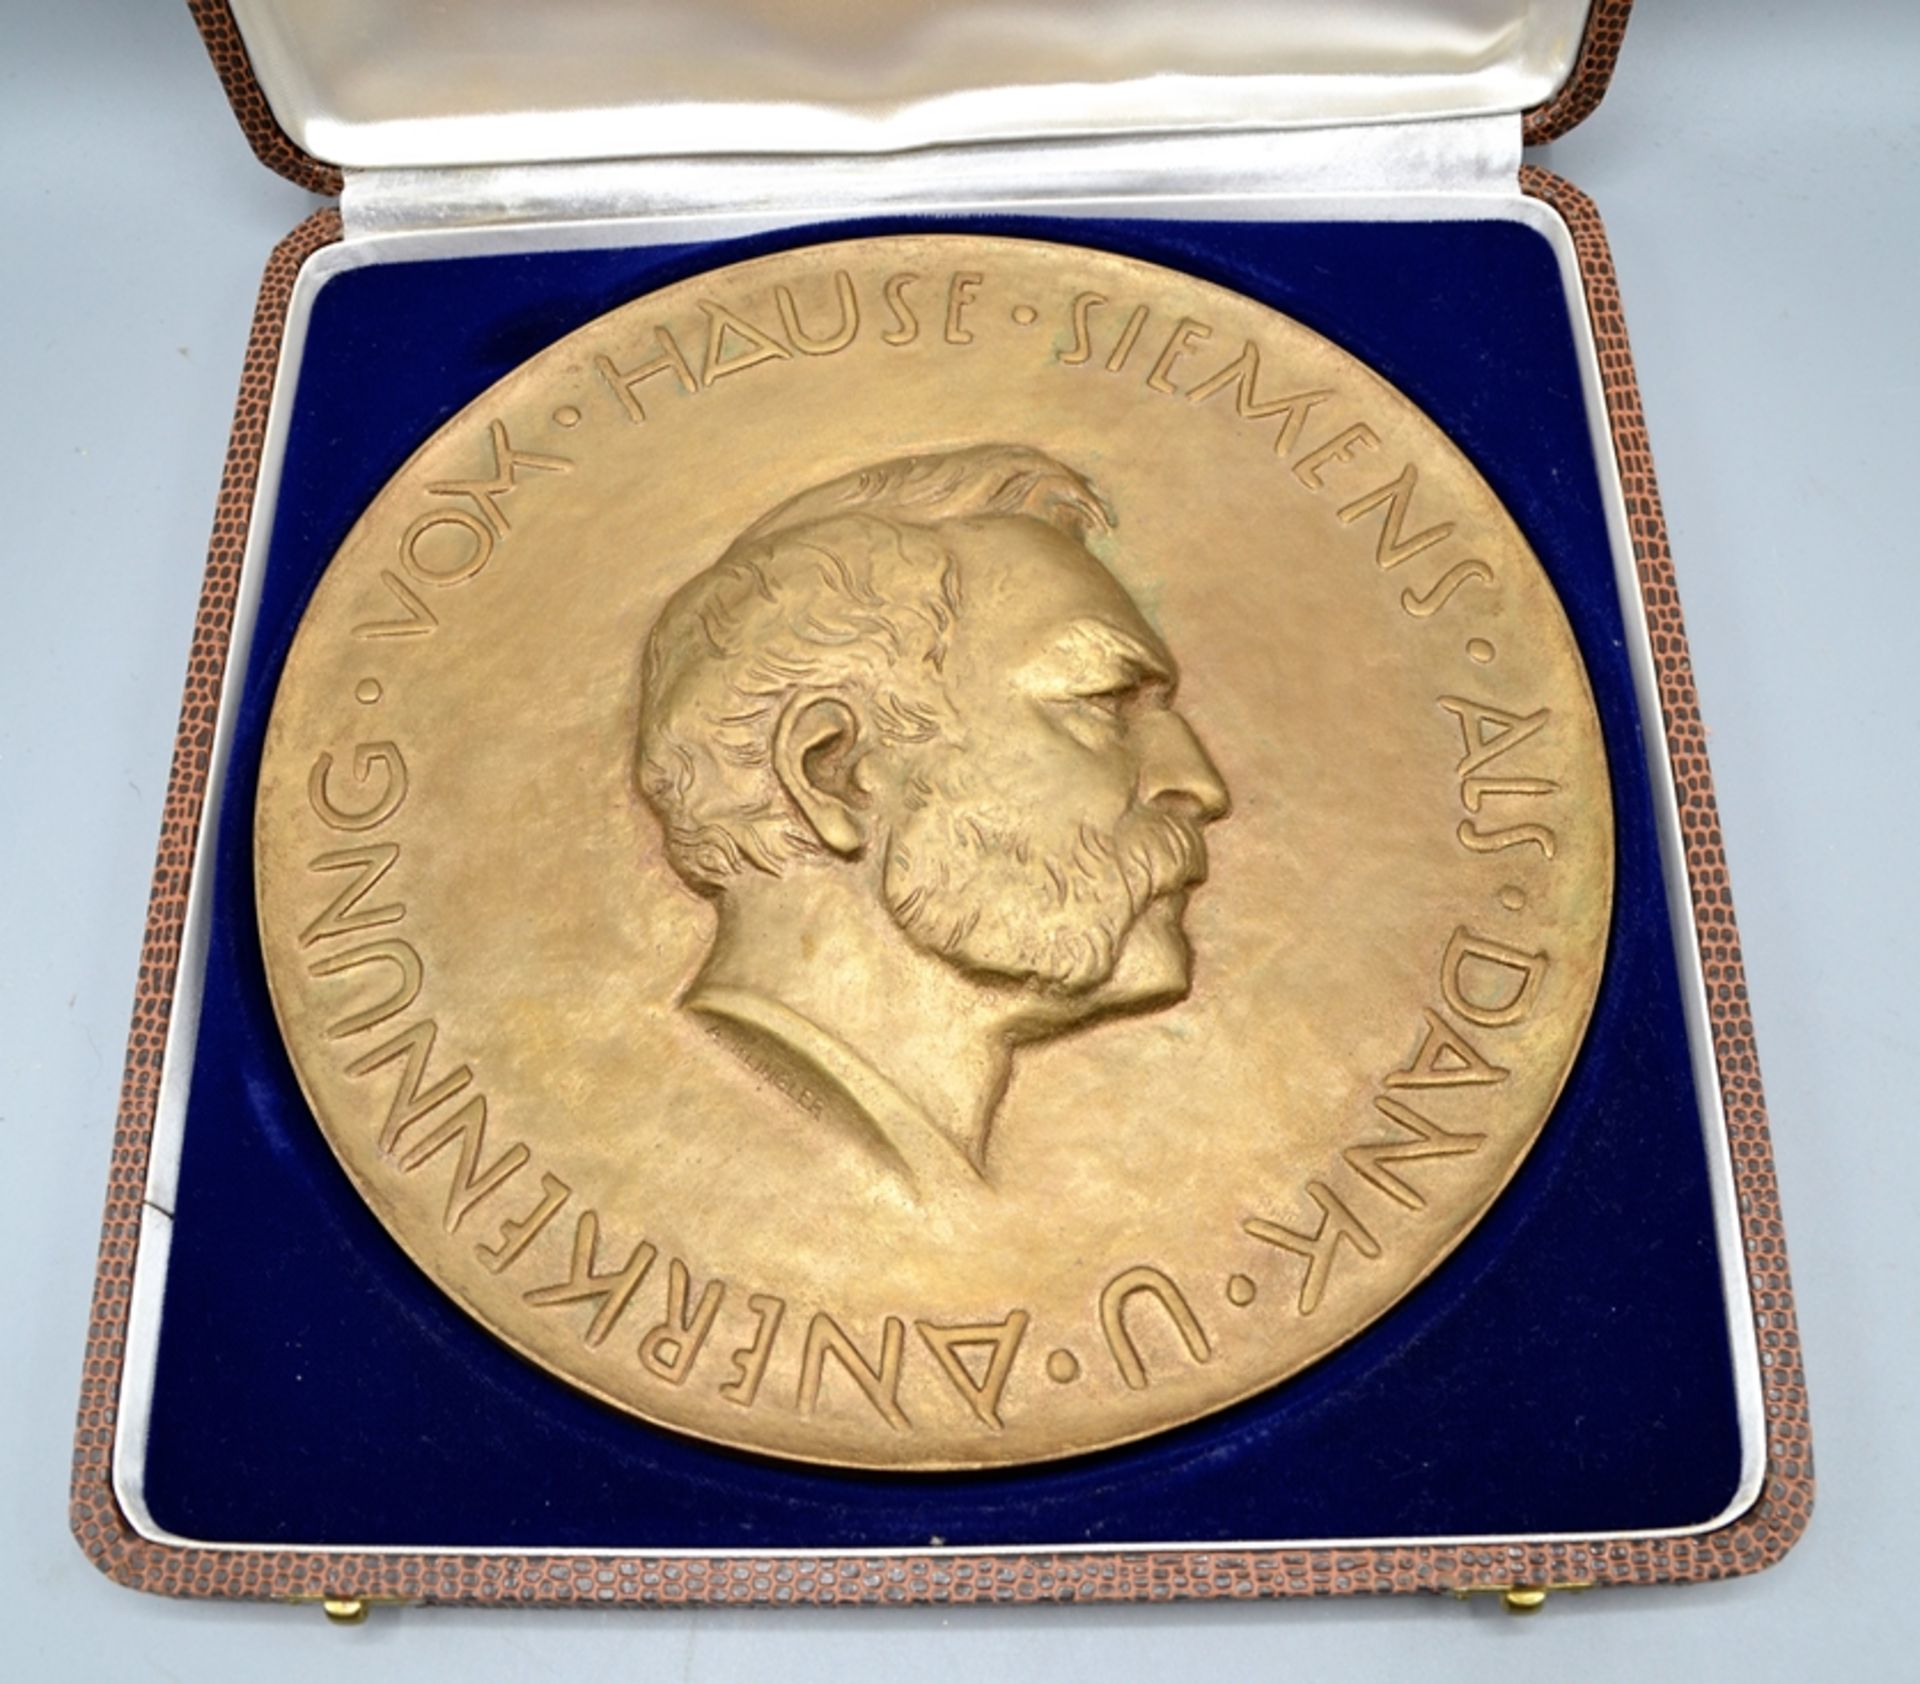 Siemens Bronzemedaille groß mit Schatulle, Inschrift "Vom Haus Siemens als Dank u. Anerkennung" Med - Bild 2 aus 2